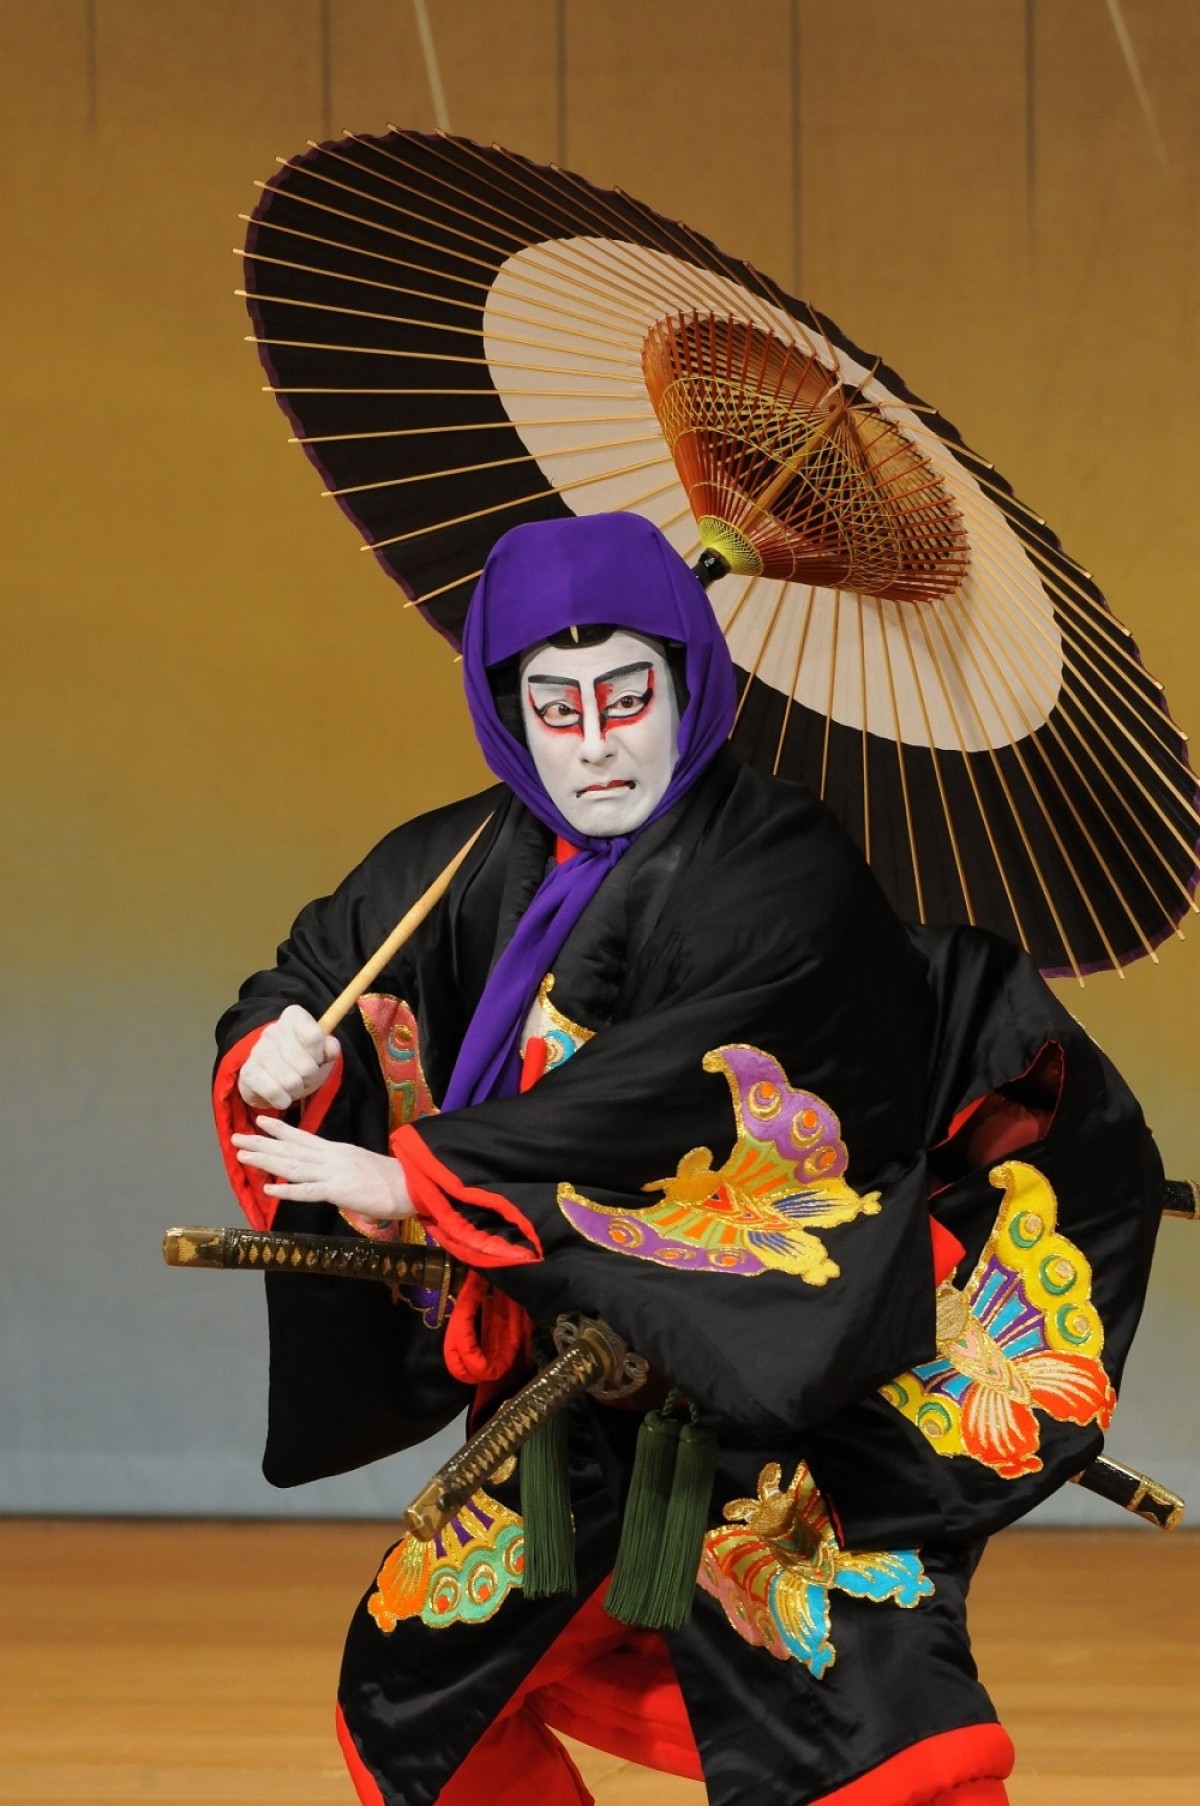 黒澤明×片岡愛之助、東京国際映画祭でコラボ「歌舞伎座スペシャルナイト」開催決定